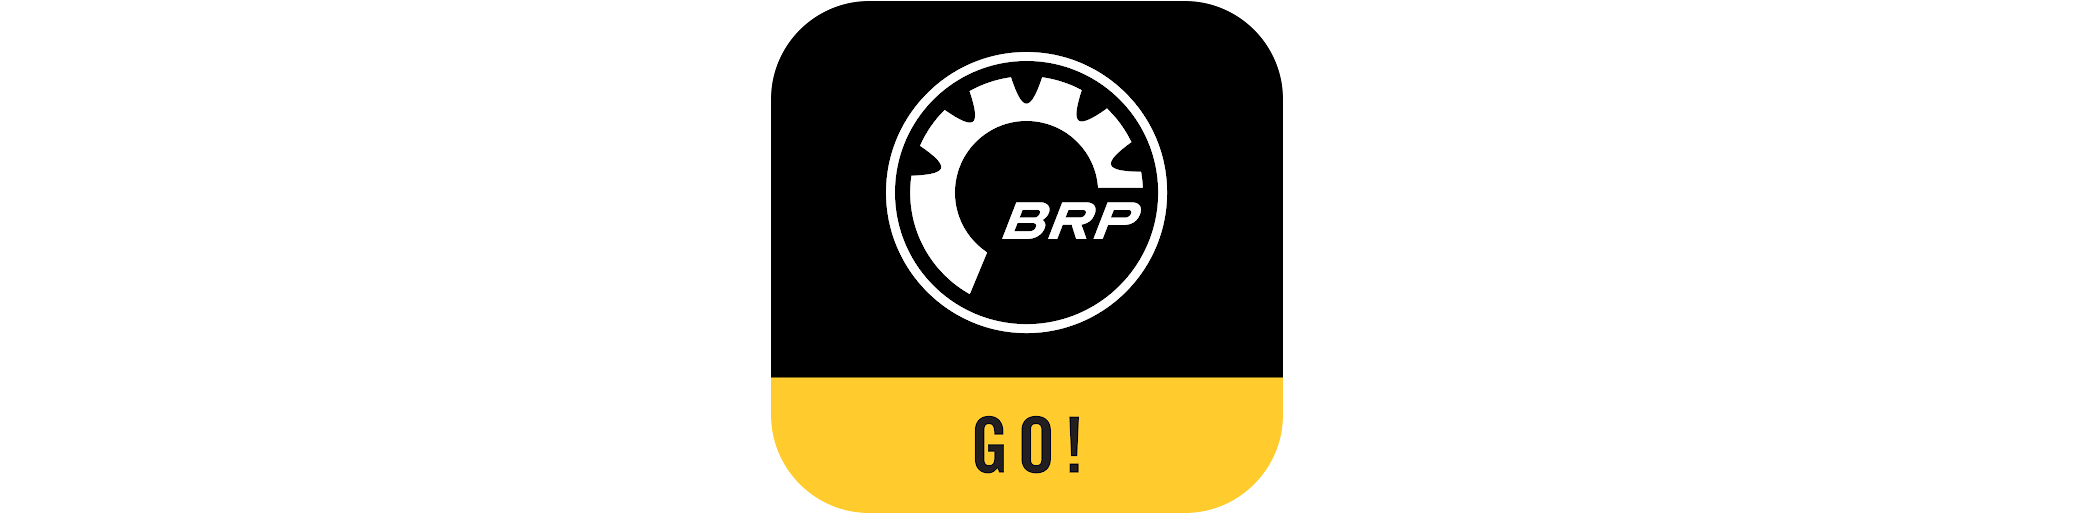 BRP GO! logo apky